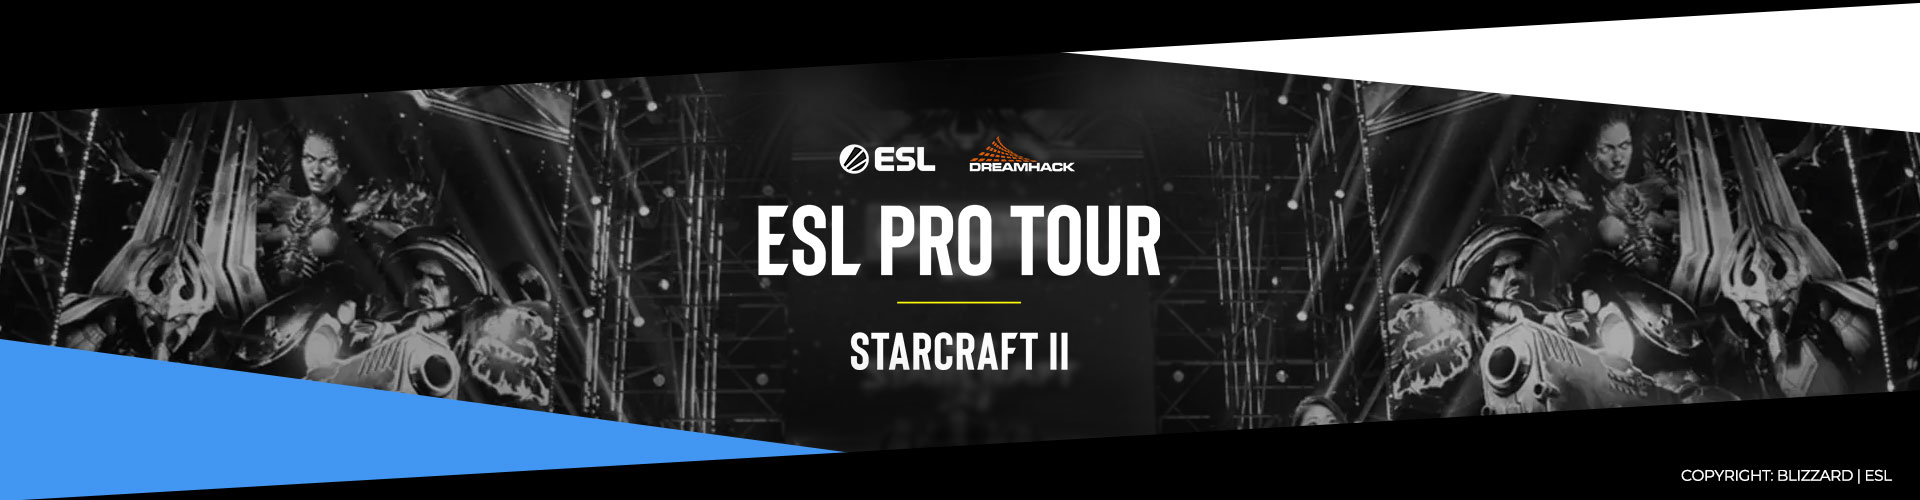 Eventsida för IEM Katowice 2020 för Starcraft 2.